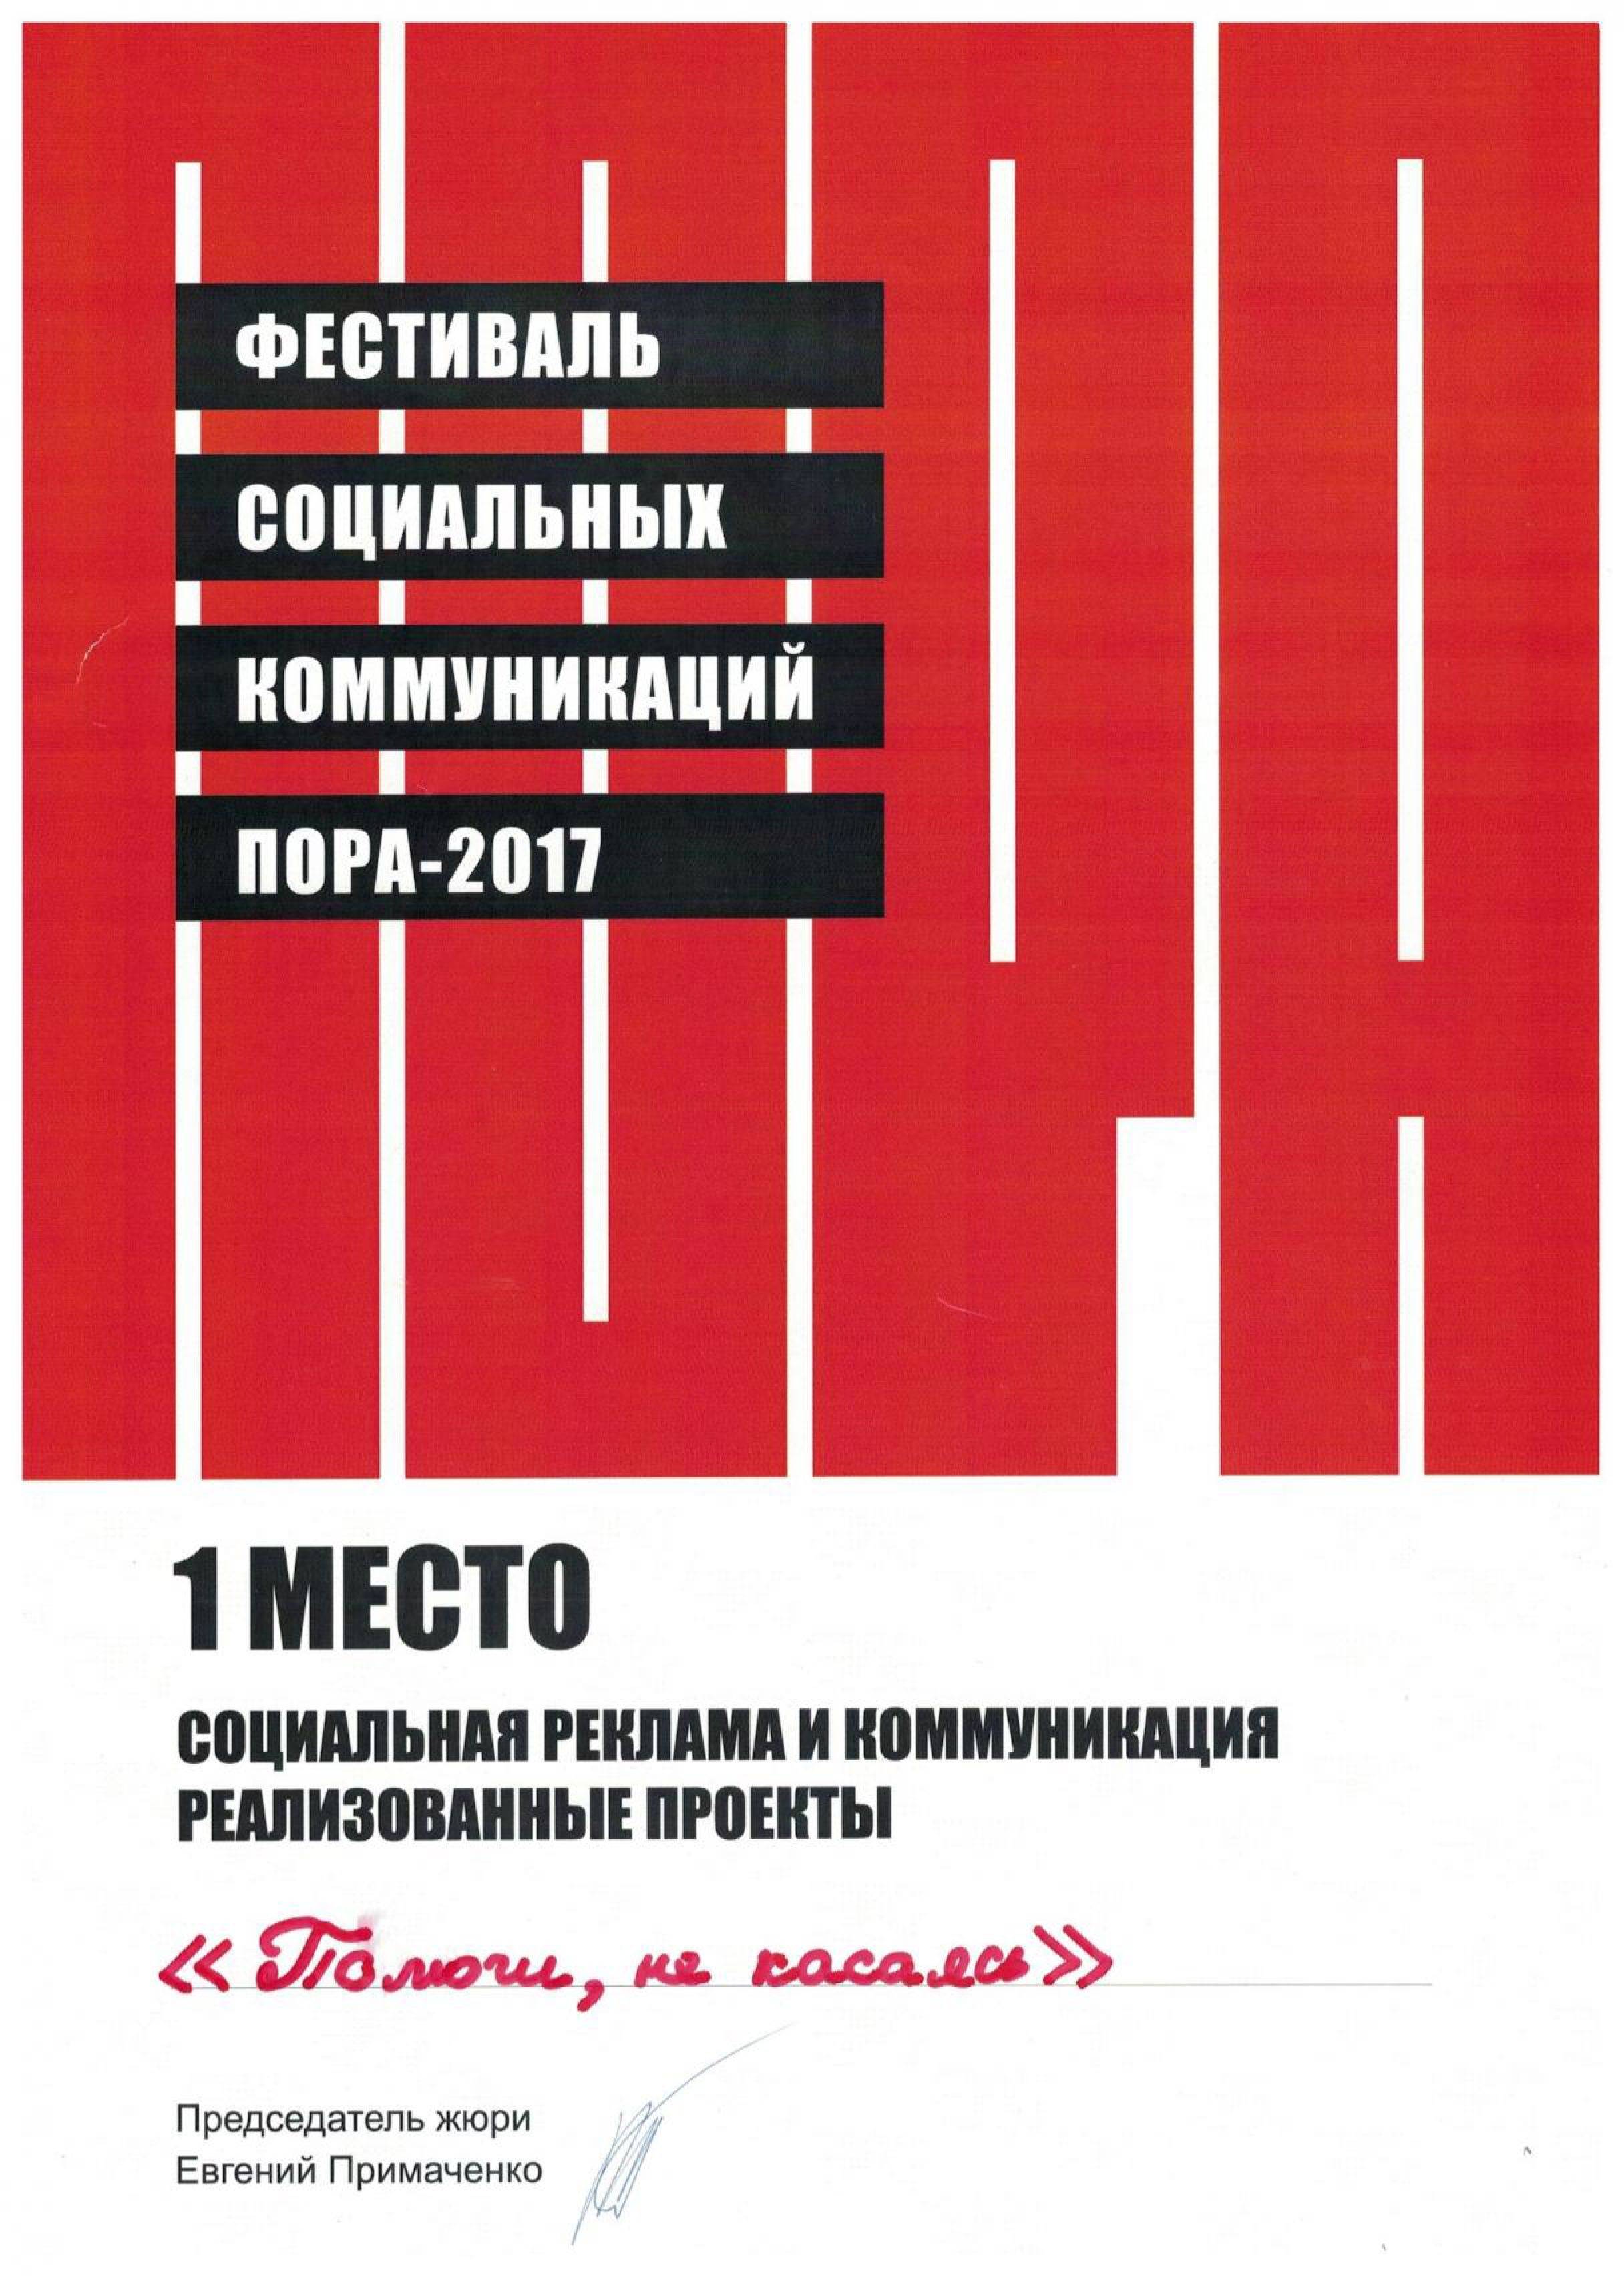 Фестиваль Социальных коммуникаций Пора-2017